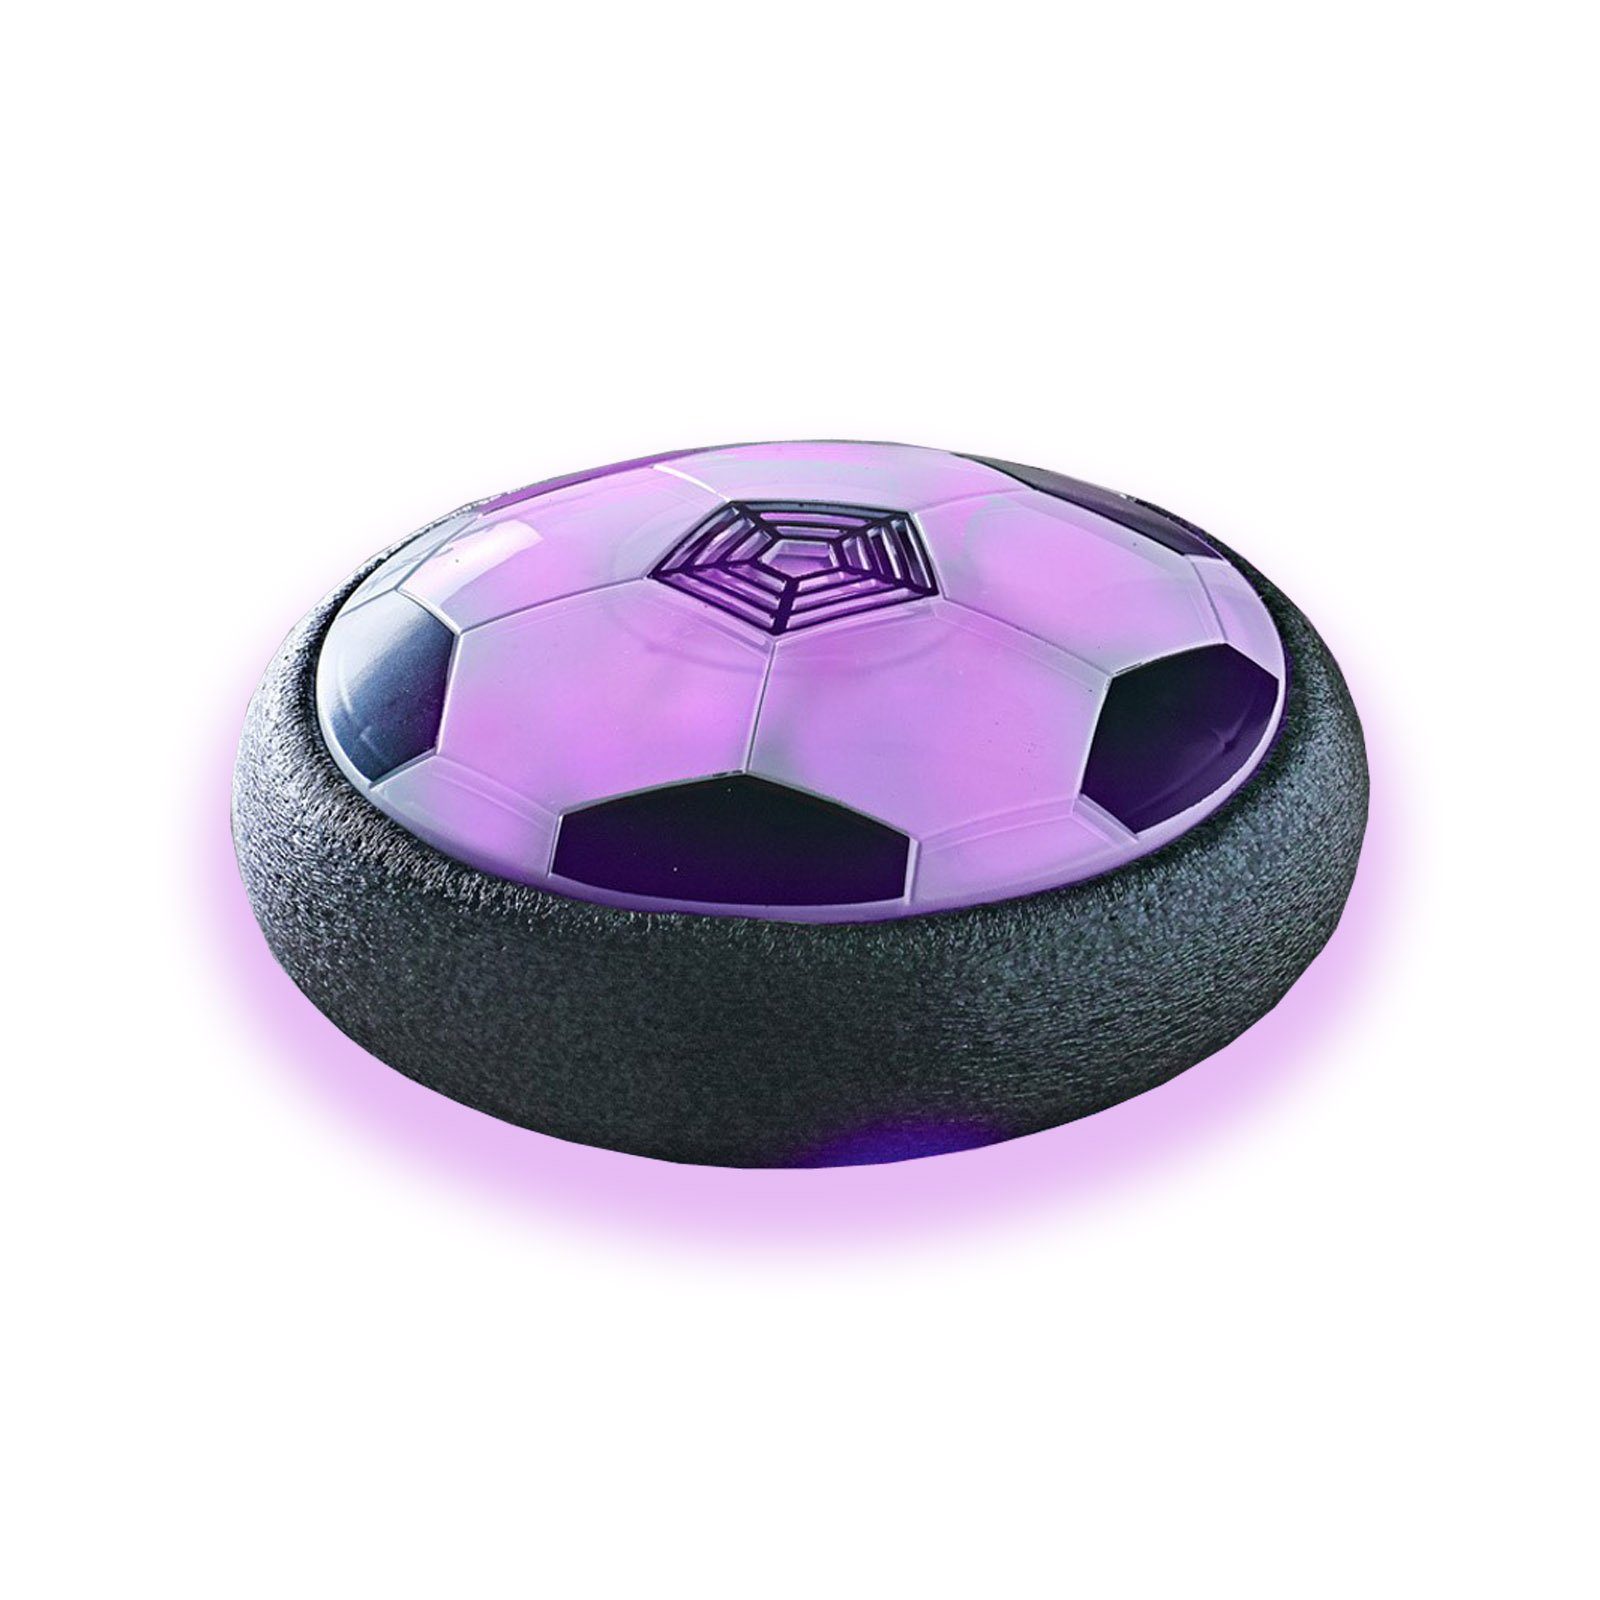 Spielball Luftkissen Schwebender Ball Scheibe mit HAC24 21 Luft Fußball LED cm Ø Beleuchtung Fussball,